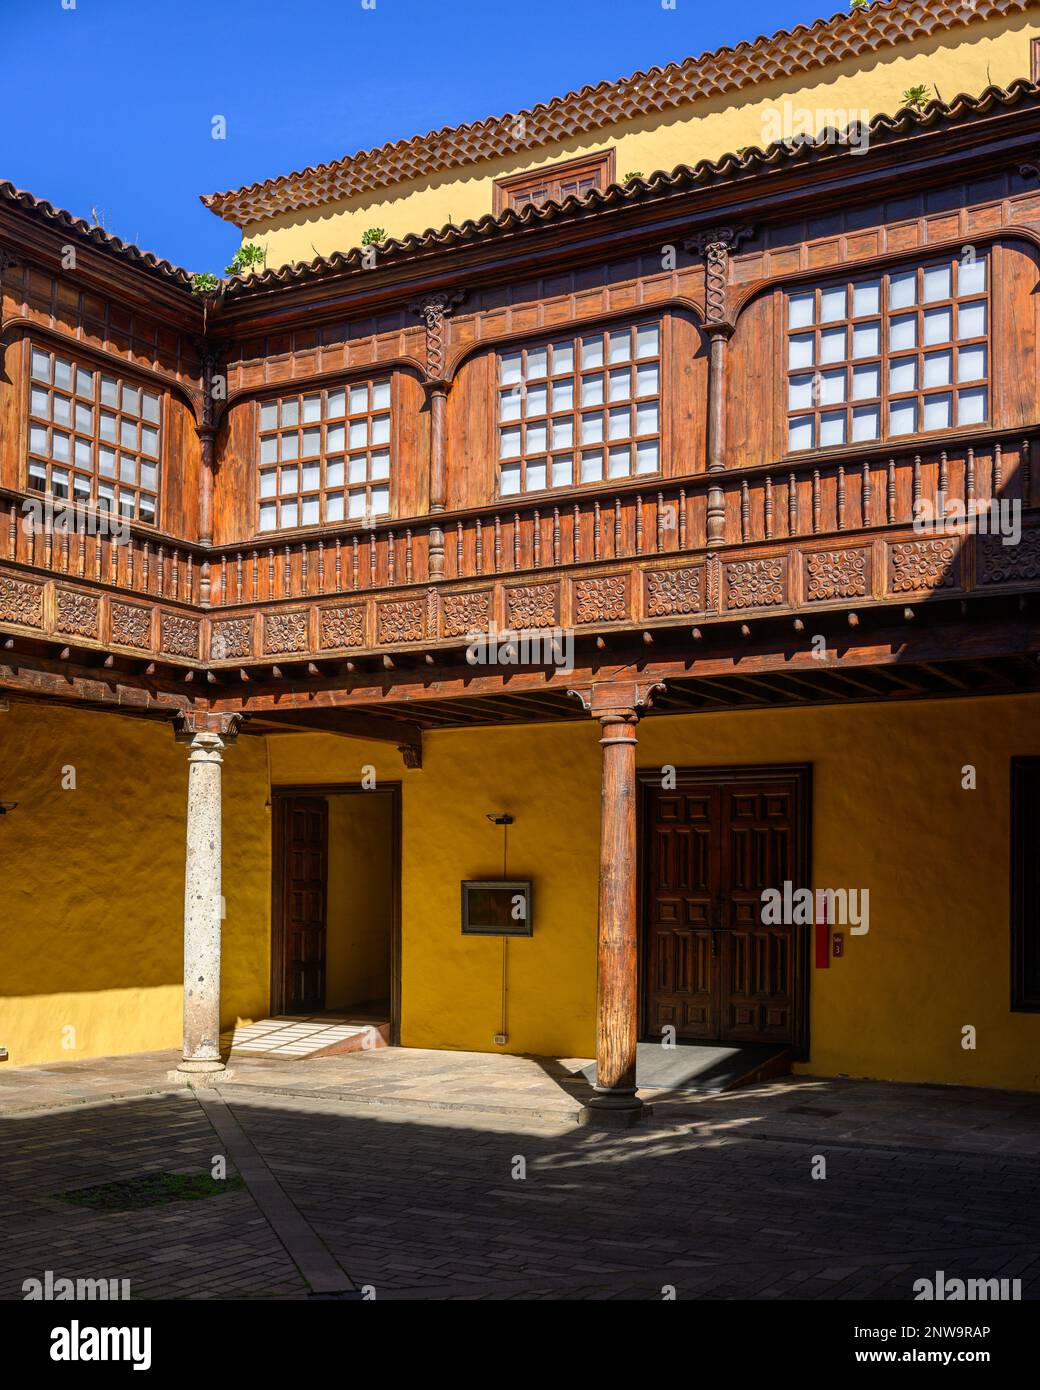 Une cour ombragée dans le Palacio Lercaro avec ses galeries traditionnelles en bois canariennes, richement sculptées et décorées, donnant sur le patio ci-dessous Banque D'Images